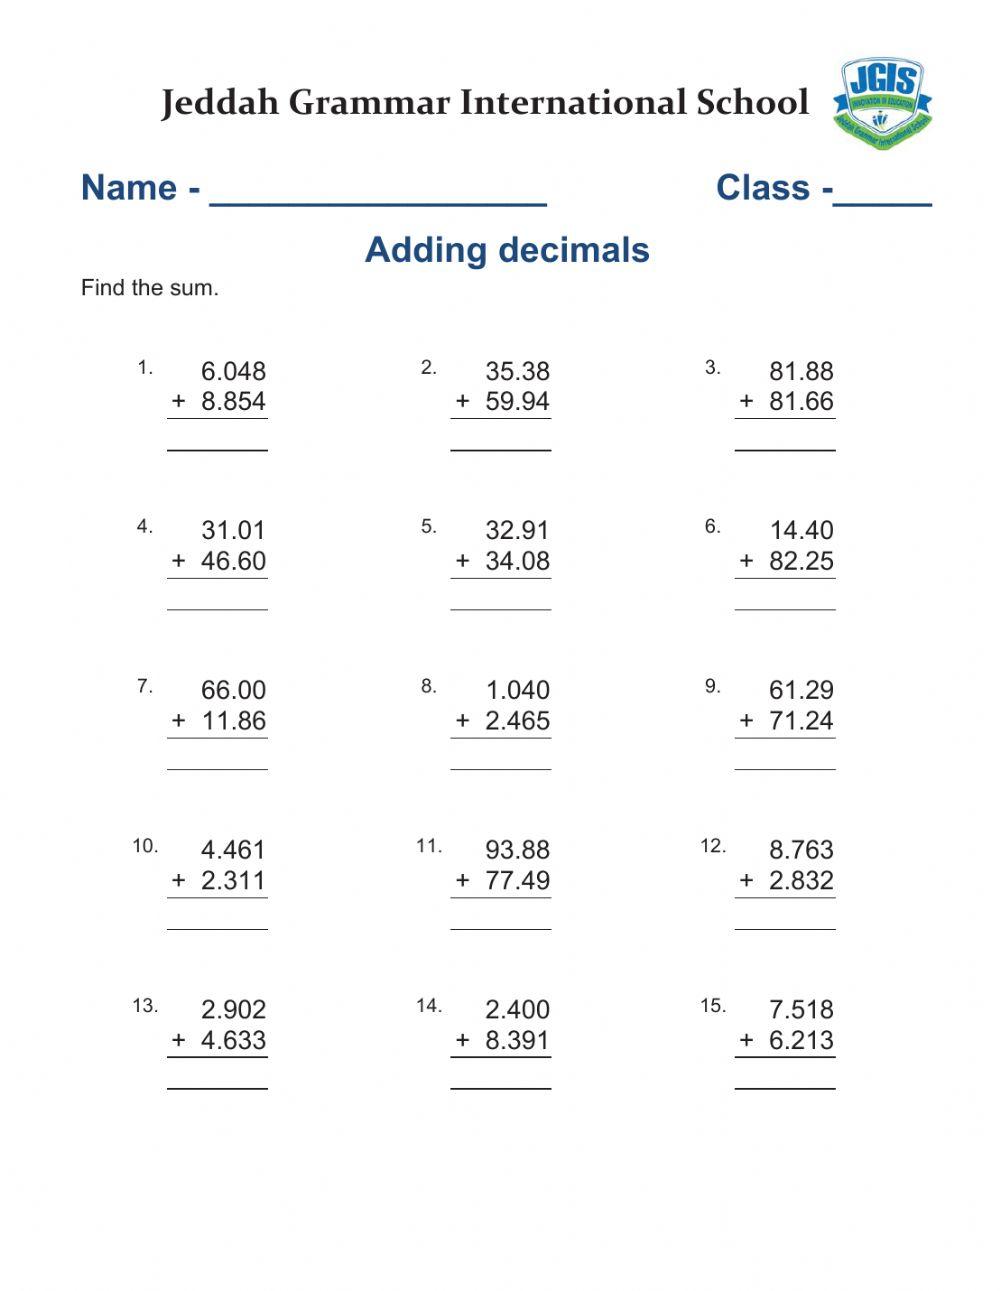 Adding Decimals in columns